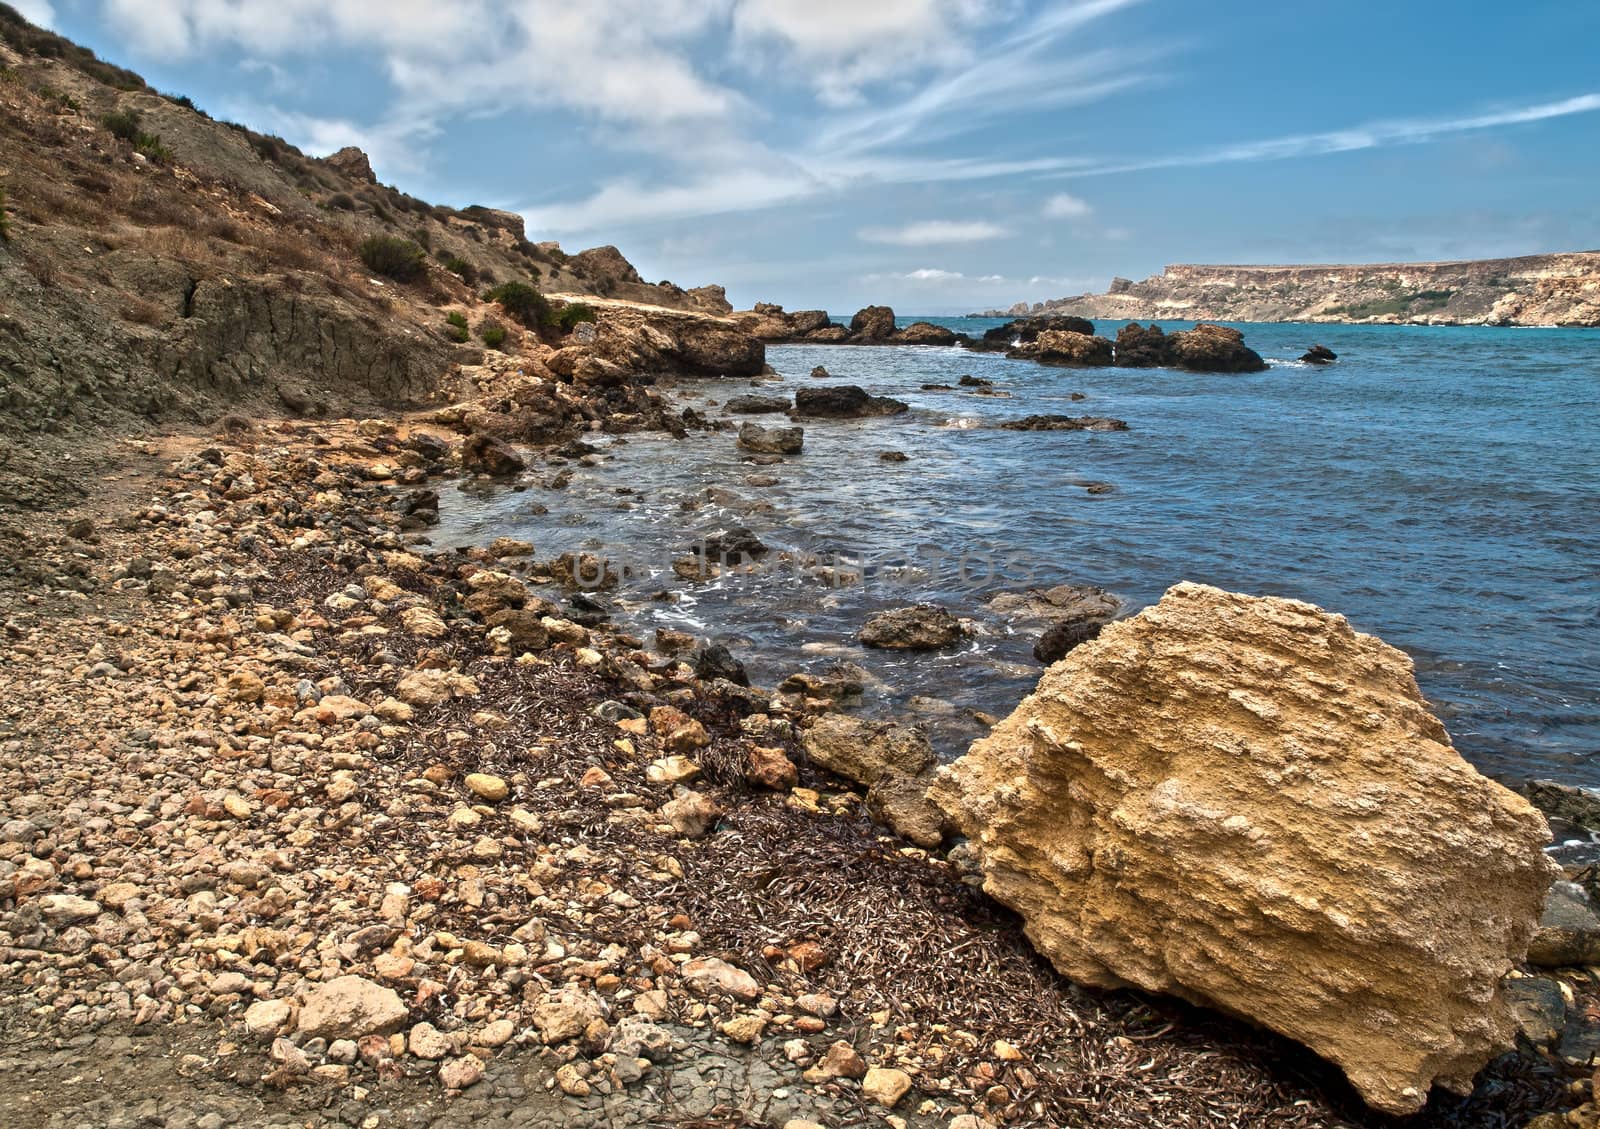 Fallen limestone boulders near the coast in Malta